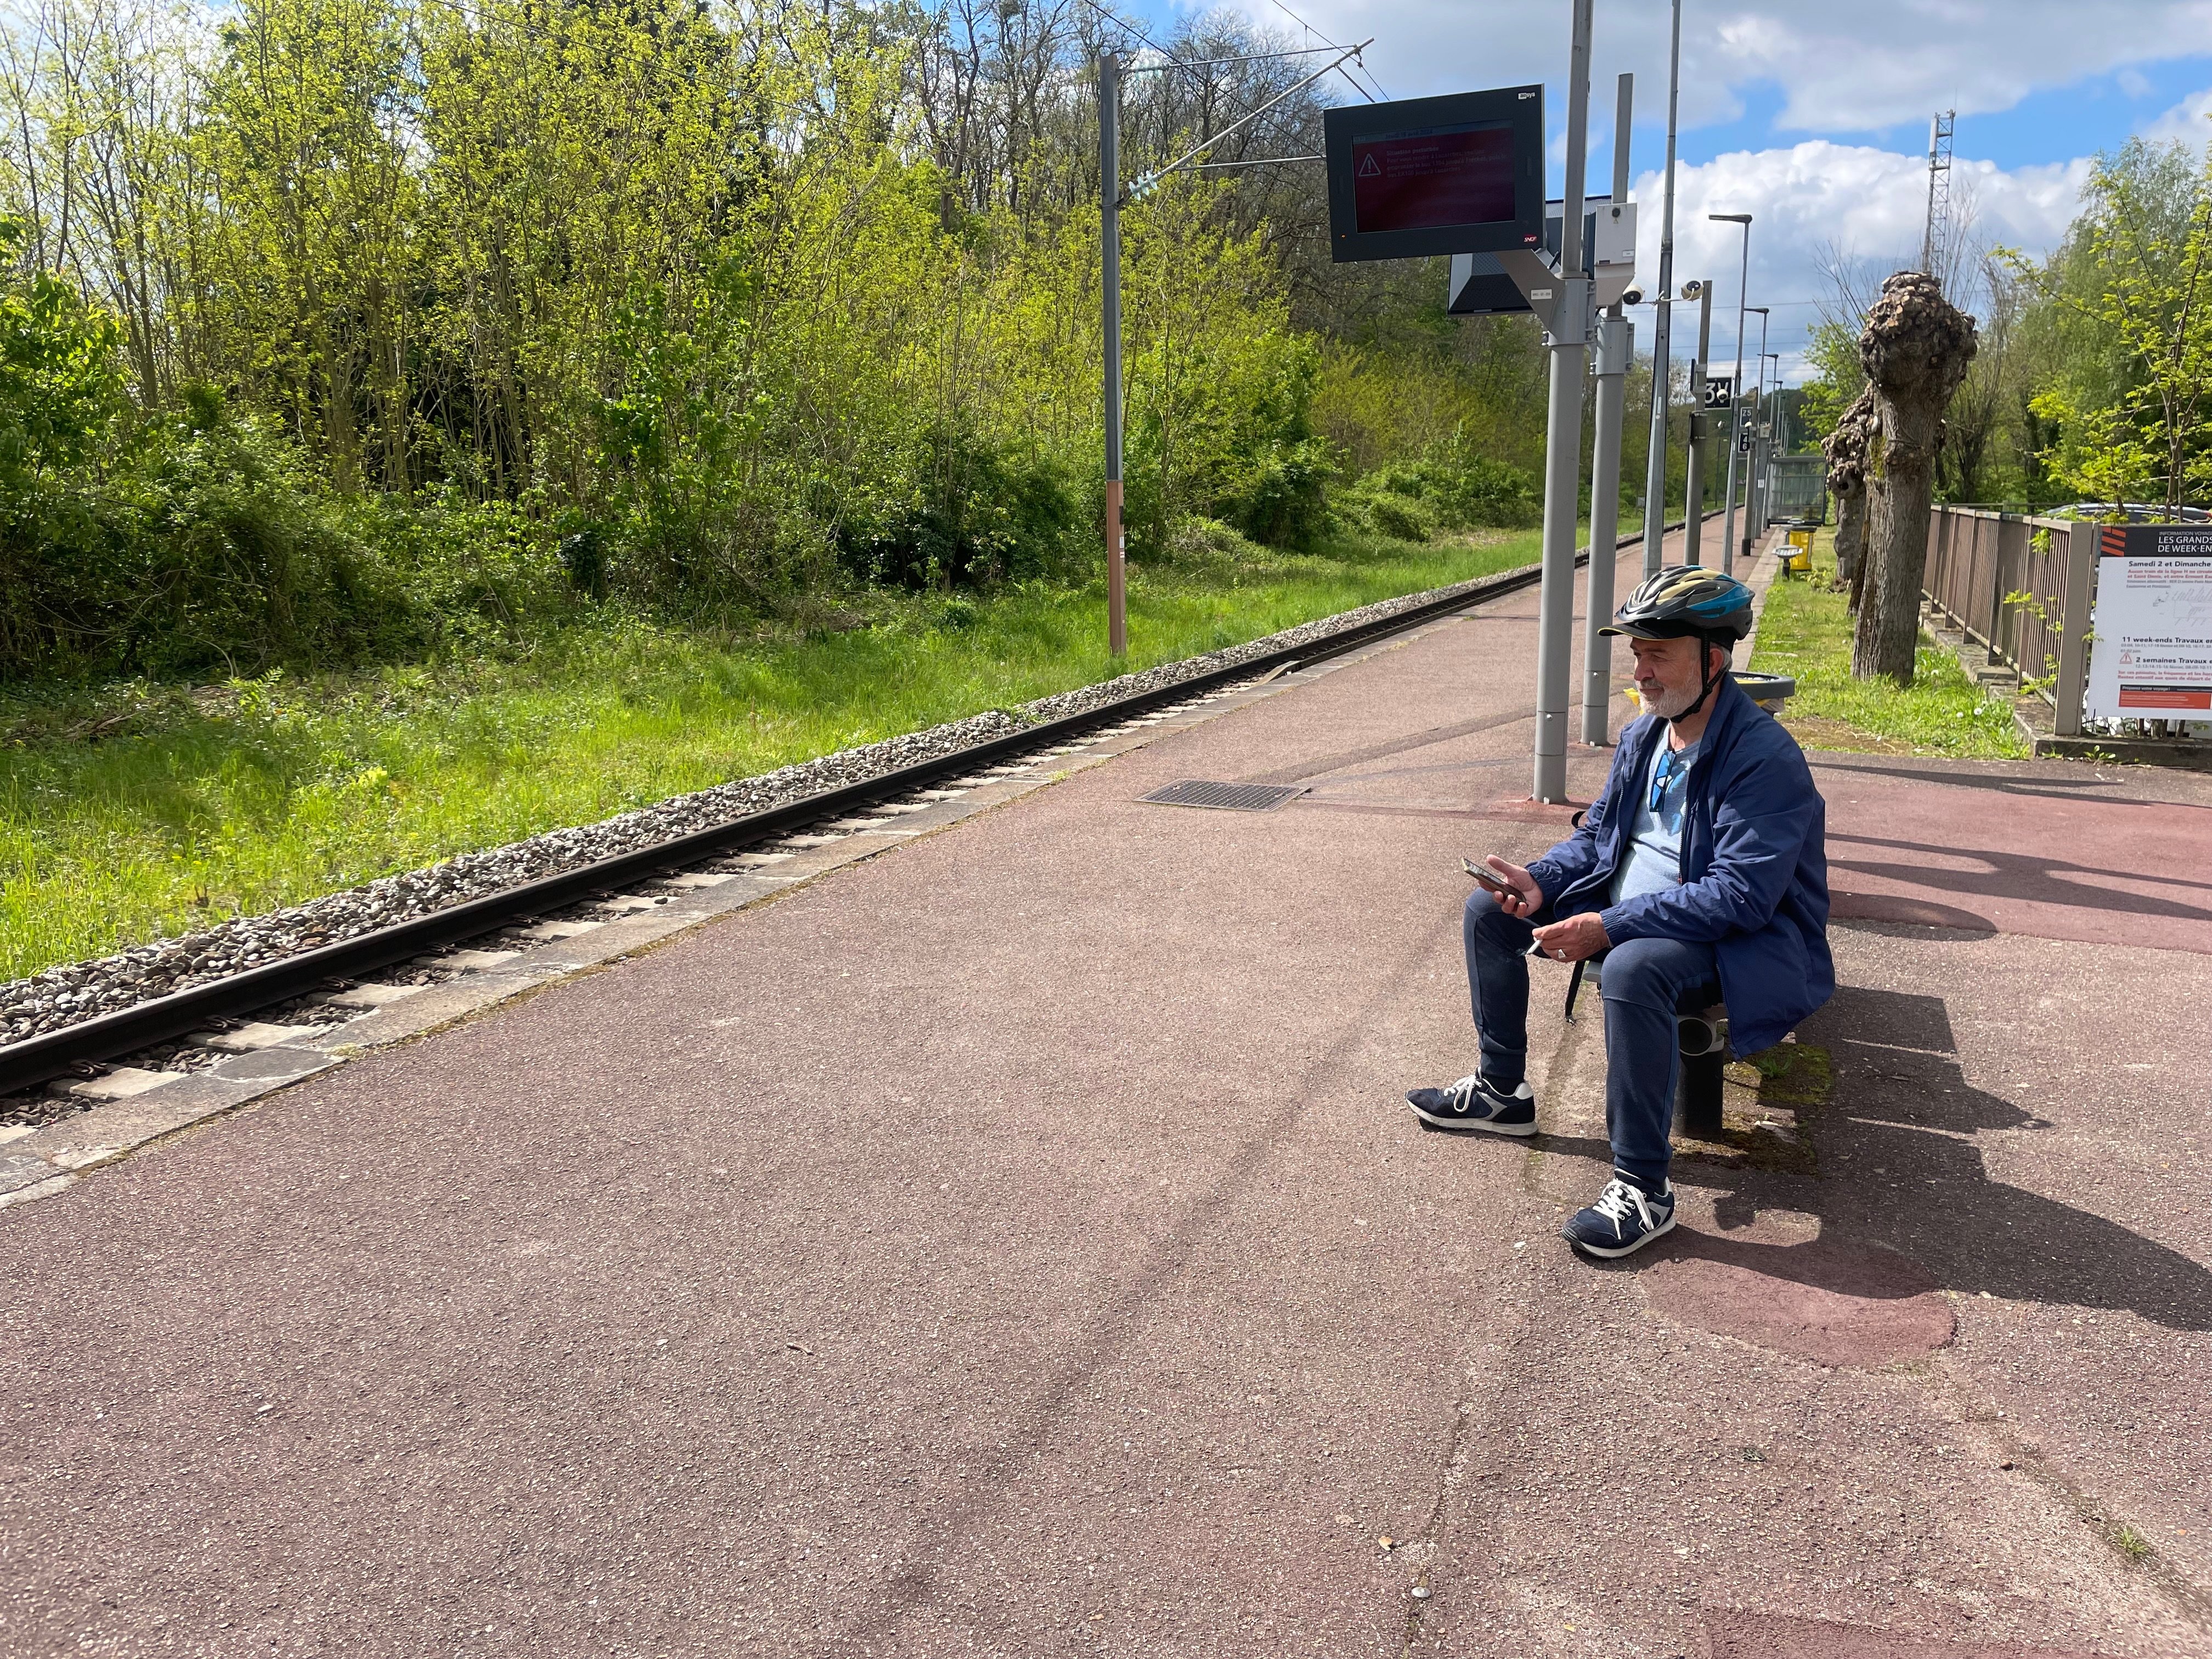 À Viarmes, jeudi 18 avril. Un touriste espagnol attendant le transilien de la ligne H pour se rendre à Paris. LP/Samuel Barbotin